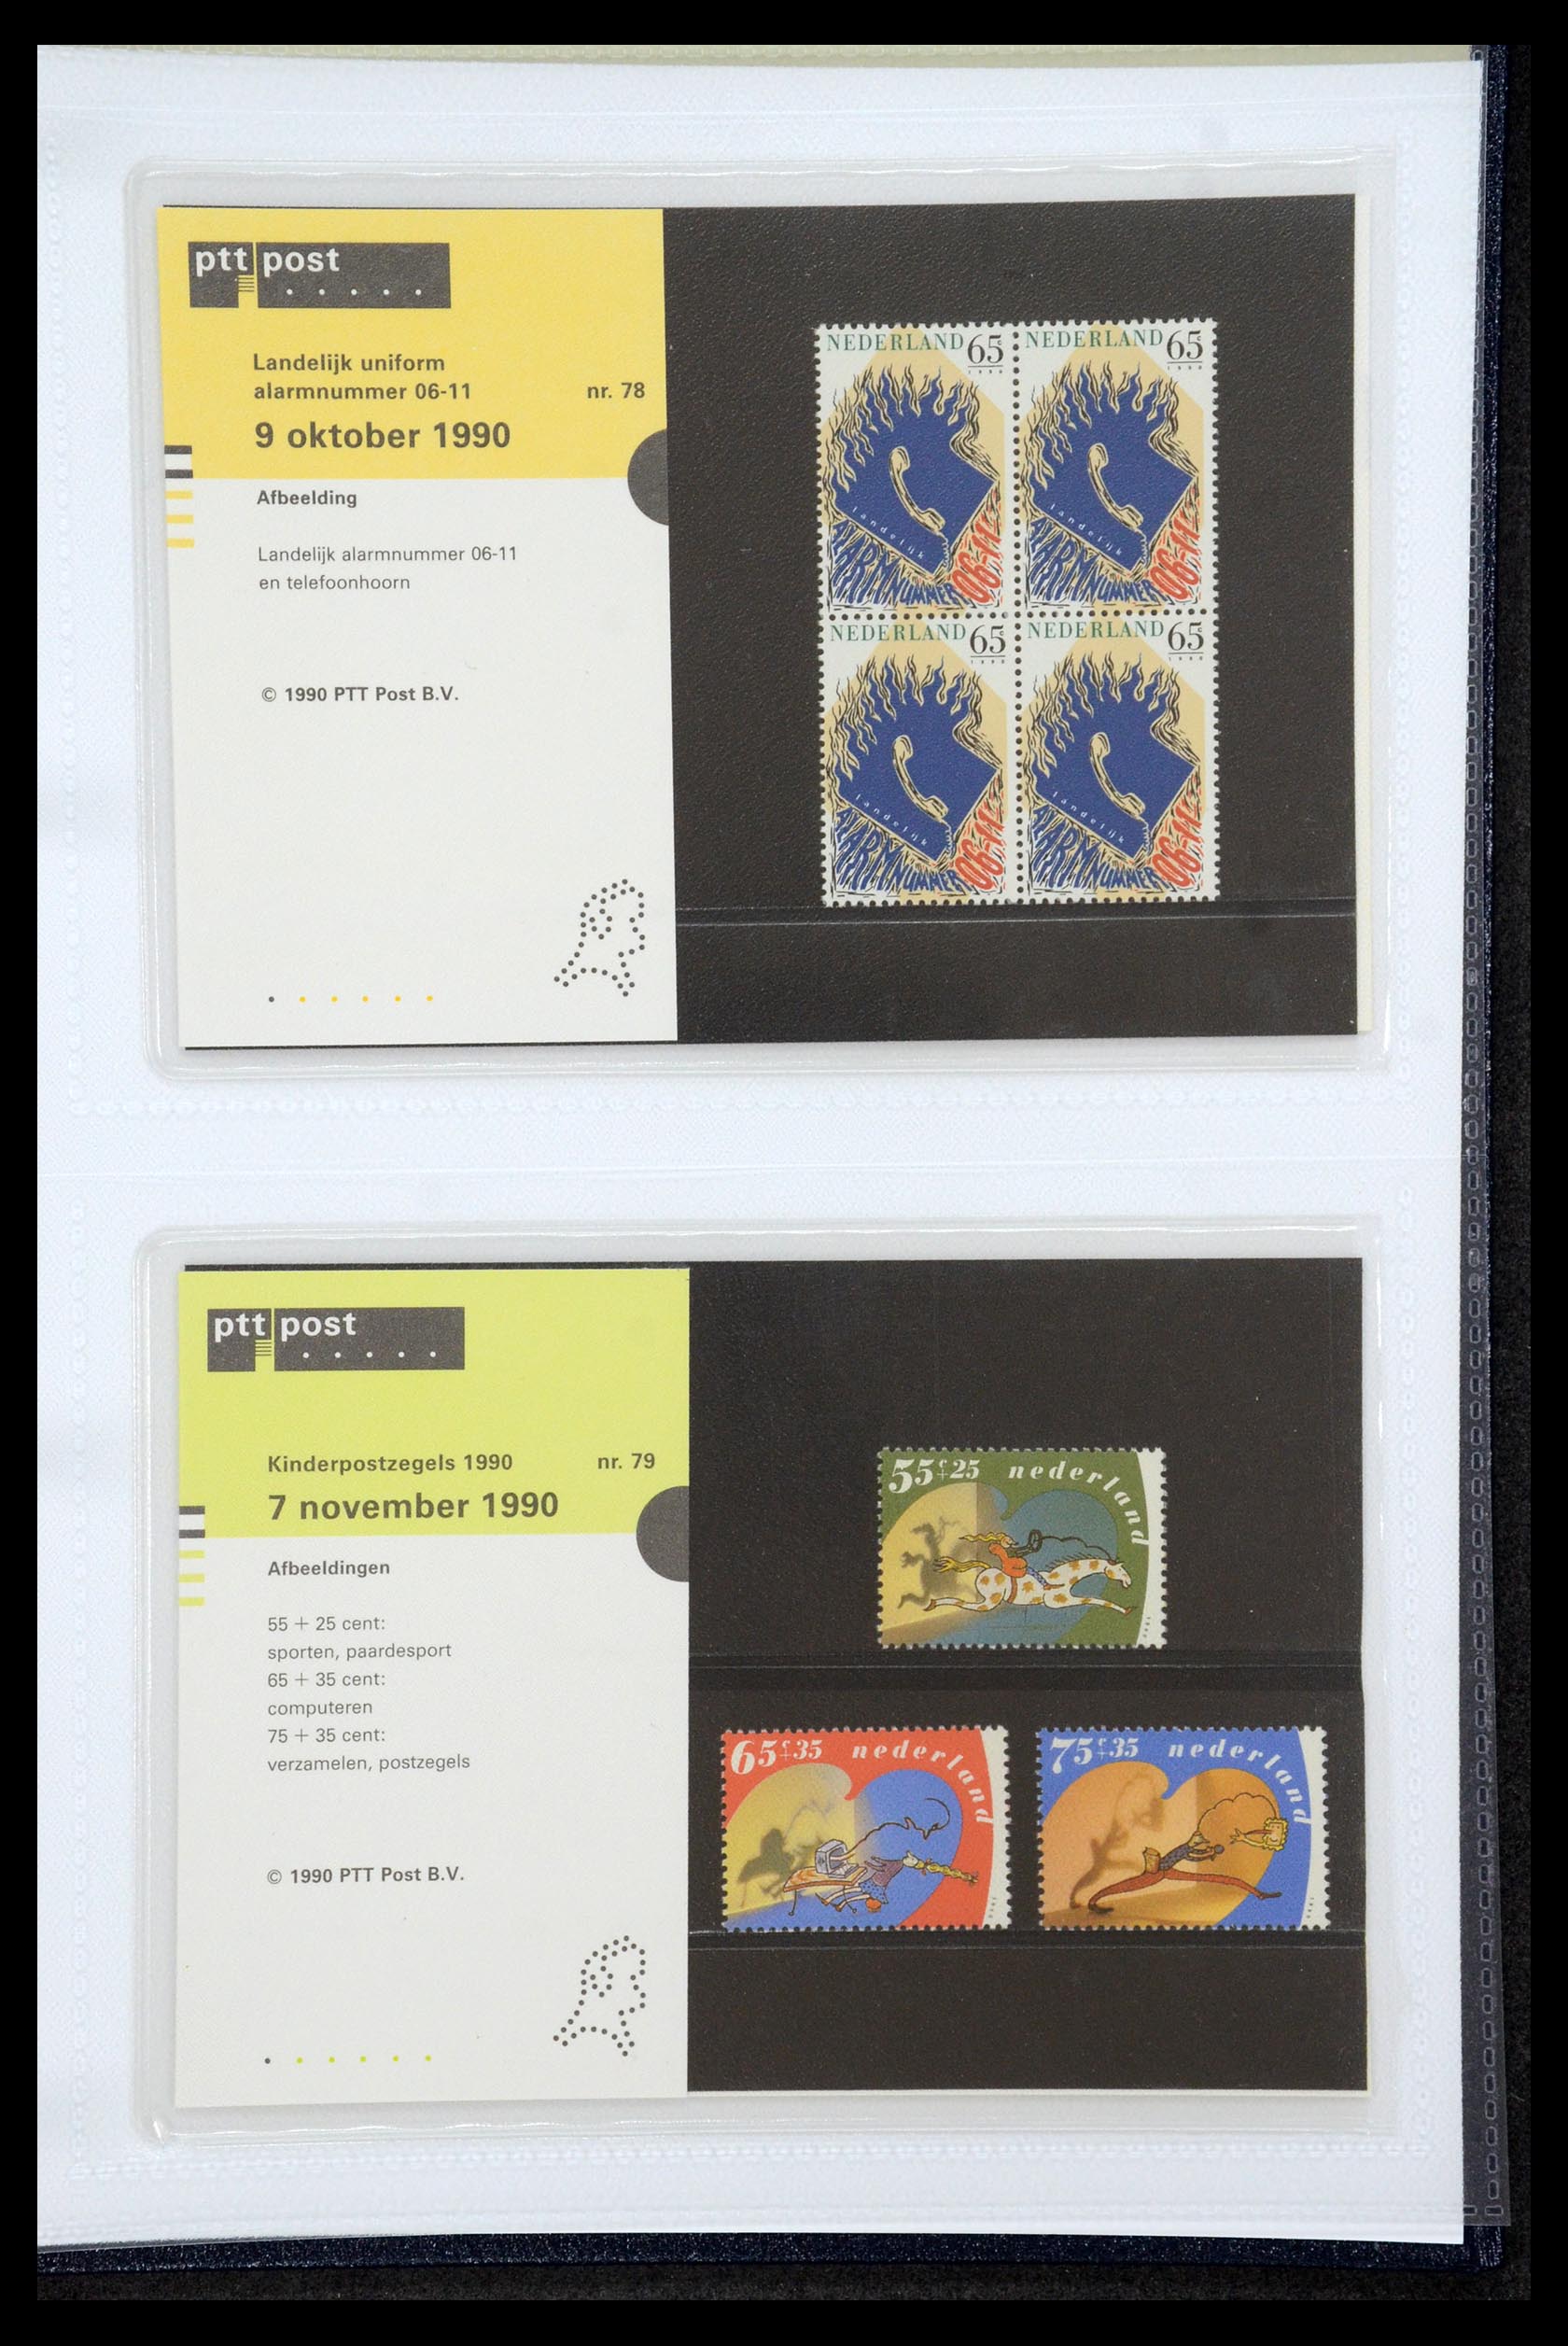 35947 040 - Stamp Collection 35947 Netherlands PTT presentation packs 1982-2019!